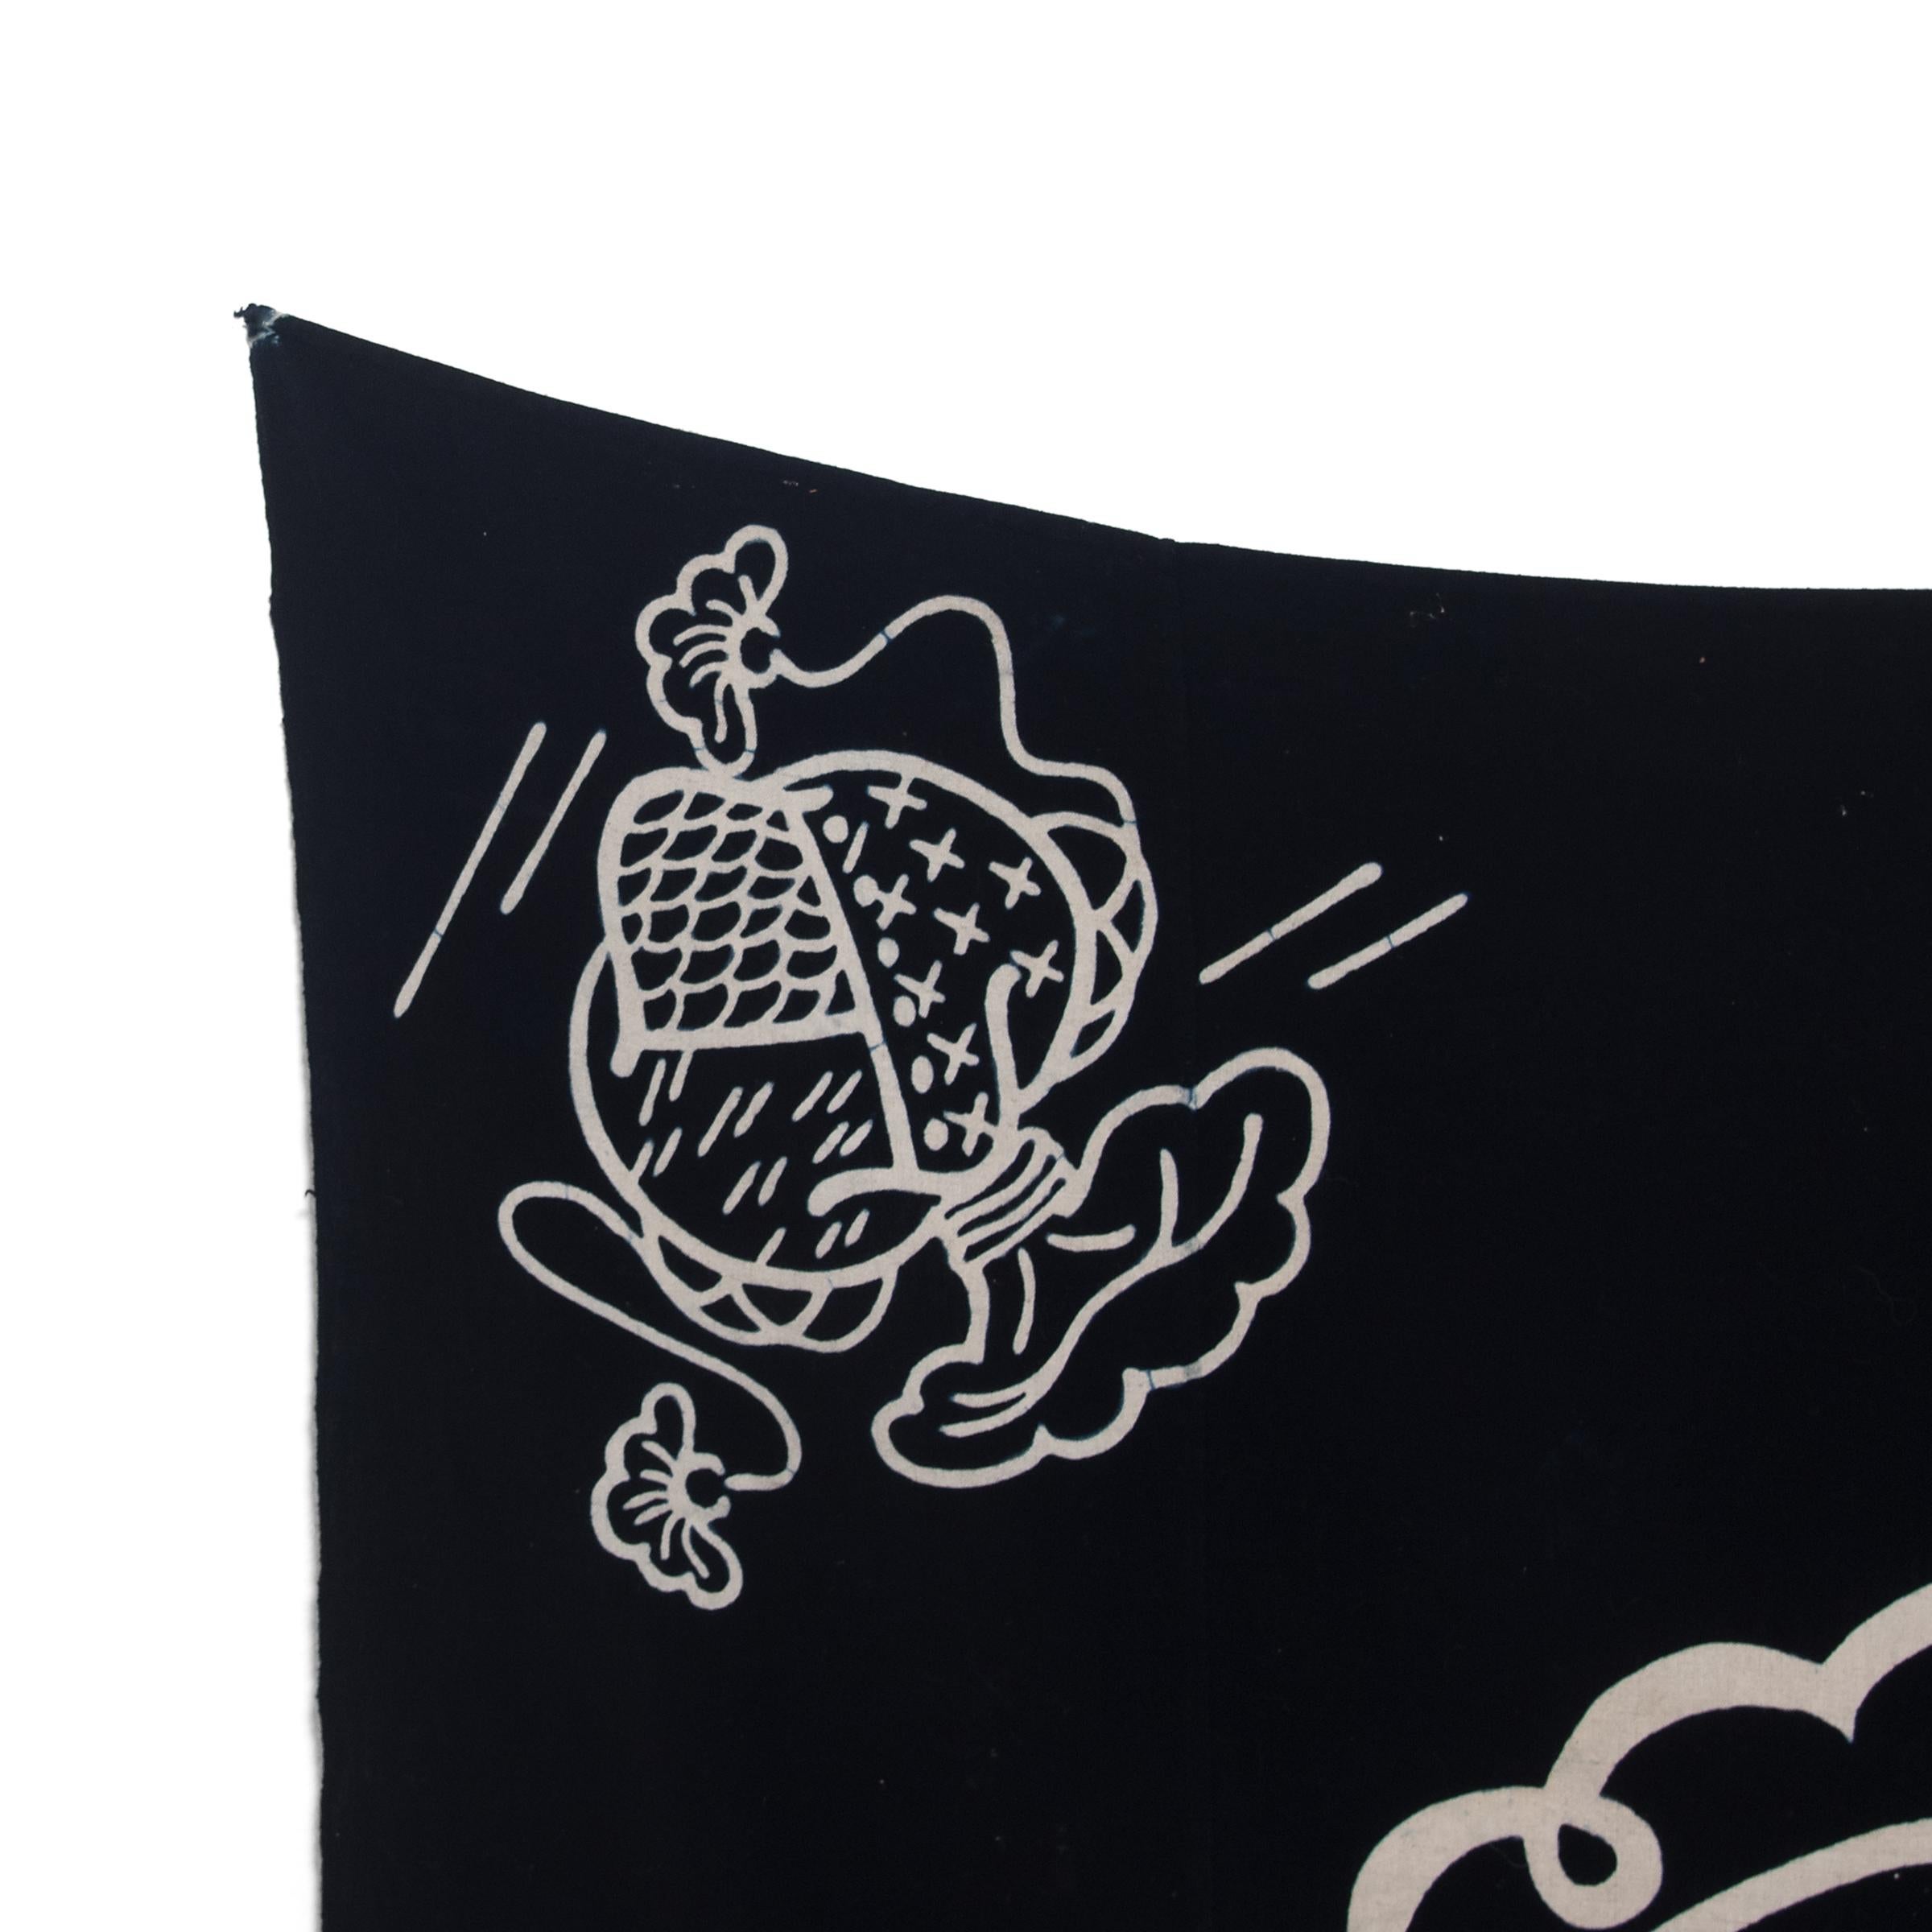 Dieses alte japanische Textil aus der Mitte des 20. Jahrhunderts ist ein volkstümliches Beispiel für einen traditionellen schablonengefärbten Stoff, der als Katazome bekannt ist. Das mit einem dunklen Indigo-Blau gefärbte Baumwolltextil hat ein